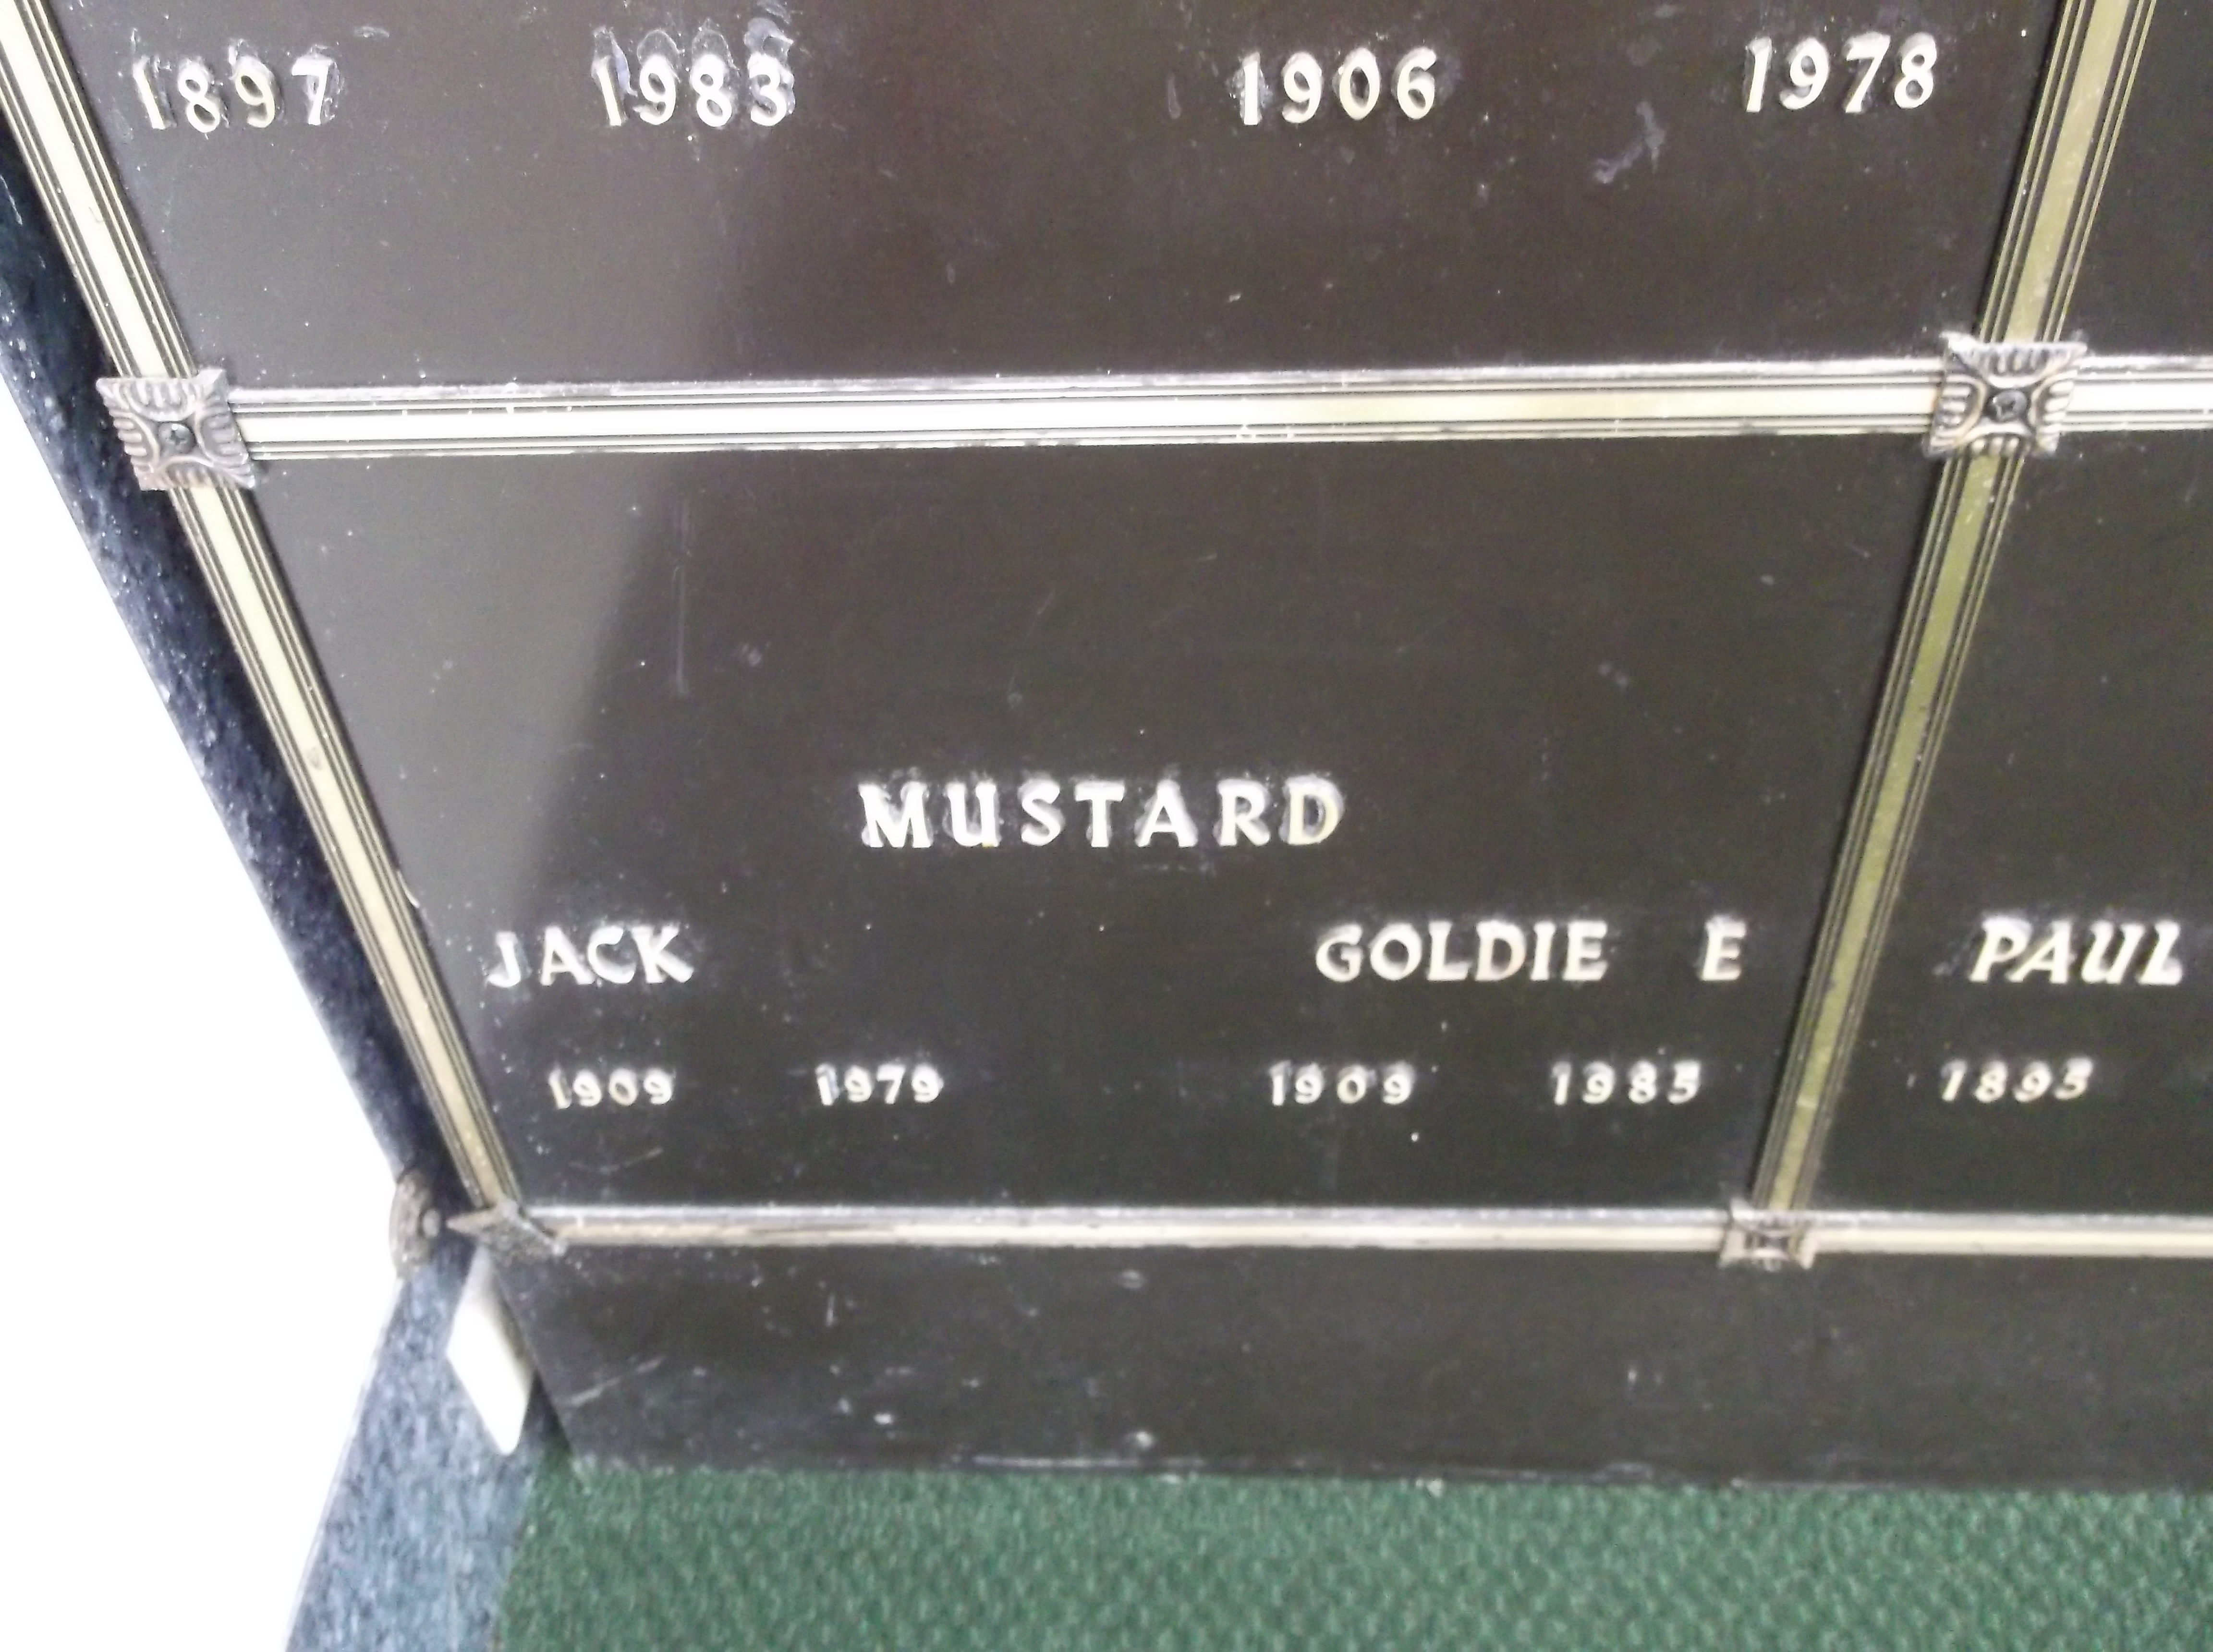 Goldie E Mustard